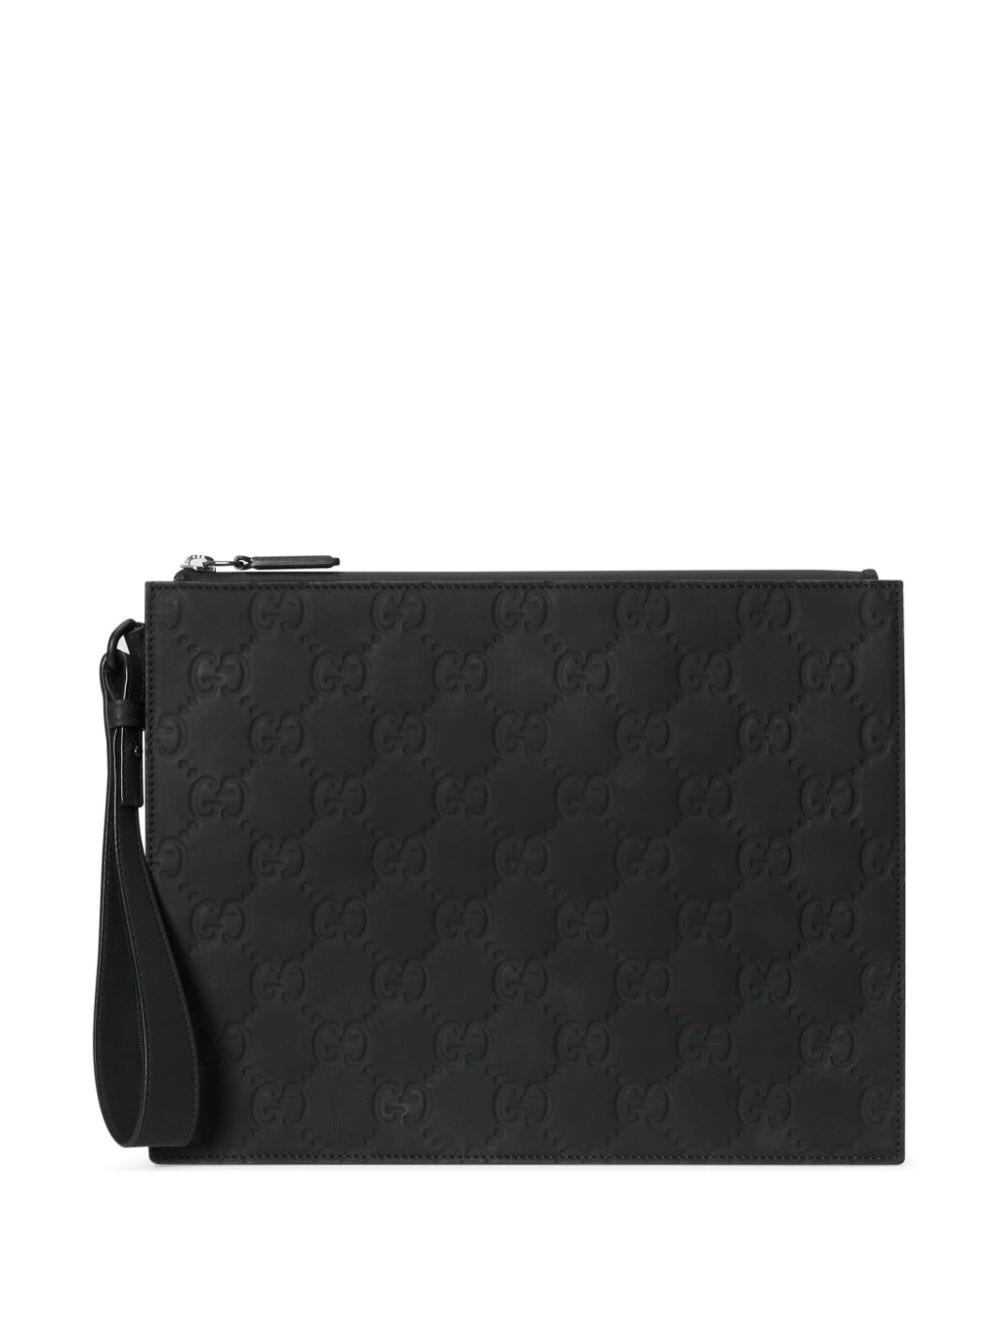 Gucci Gg Monogram Clutch Bag In Black